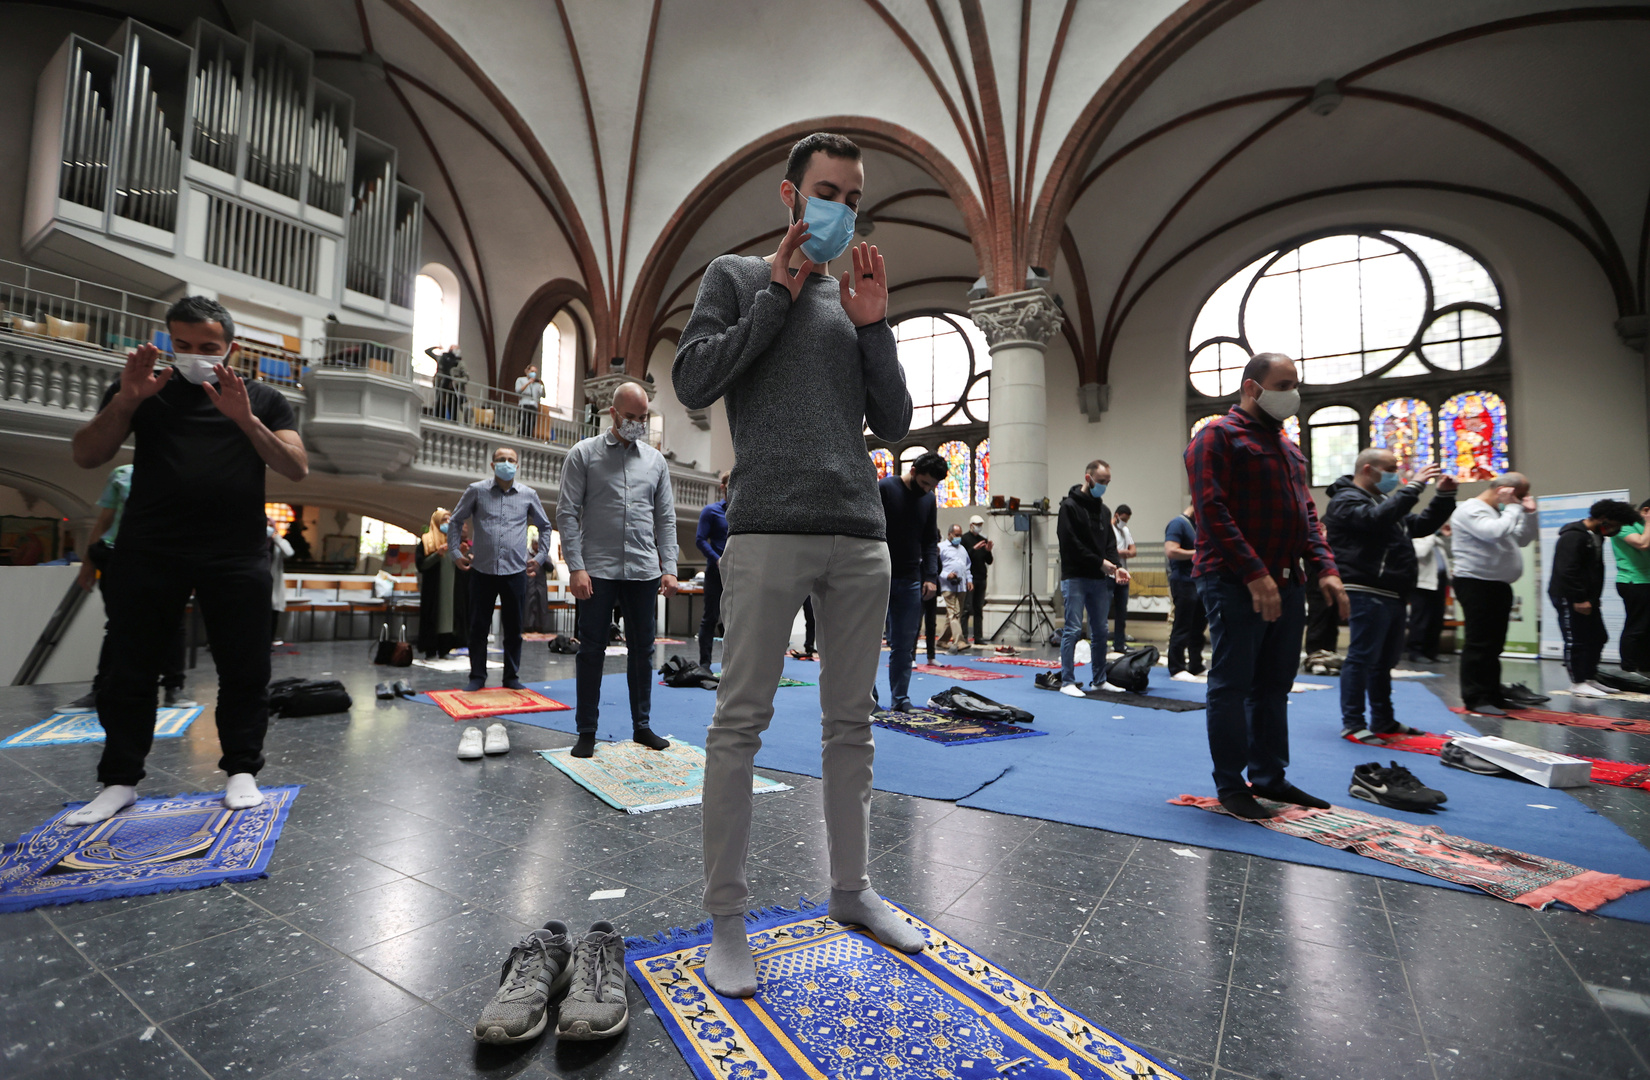 بالصور.. كنيسة في برلين تستضيف المسلمين لأداء الصلاة في ظل كورونا